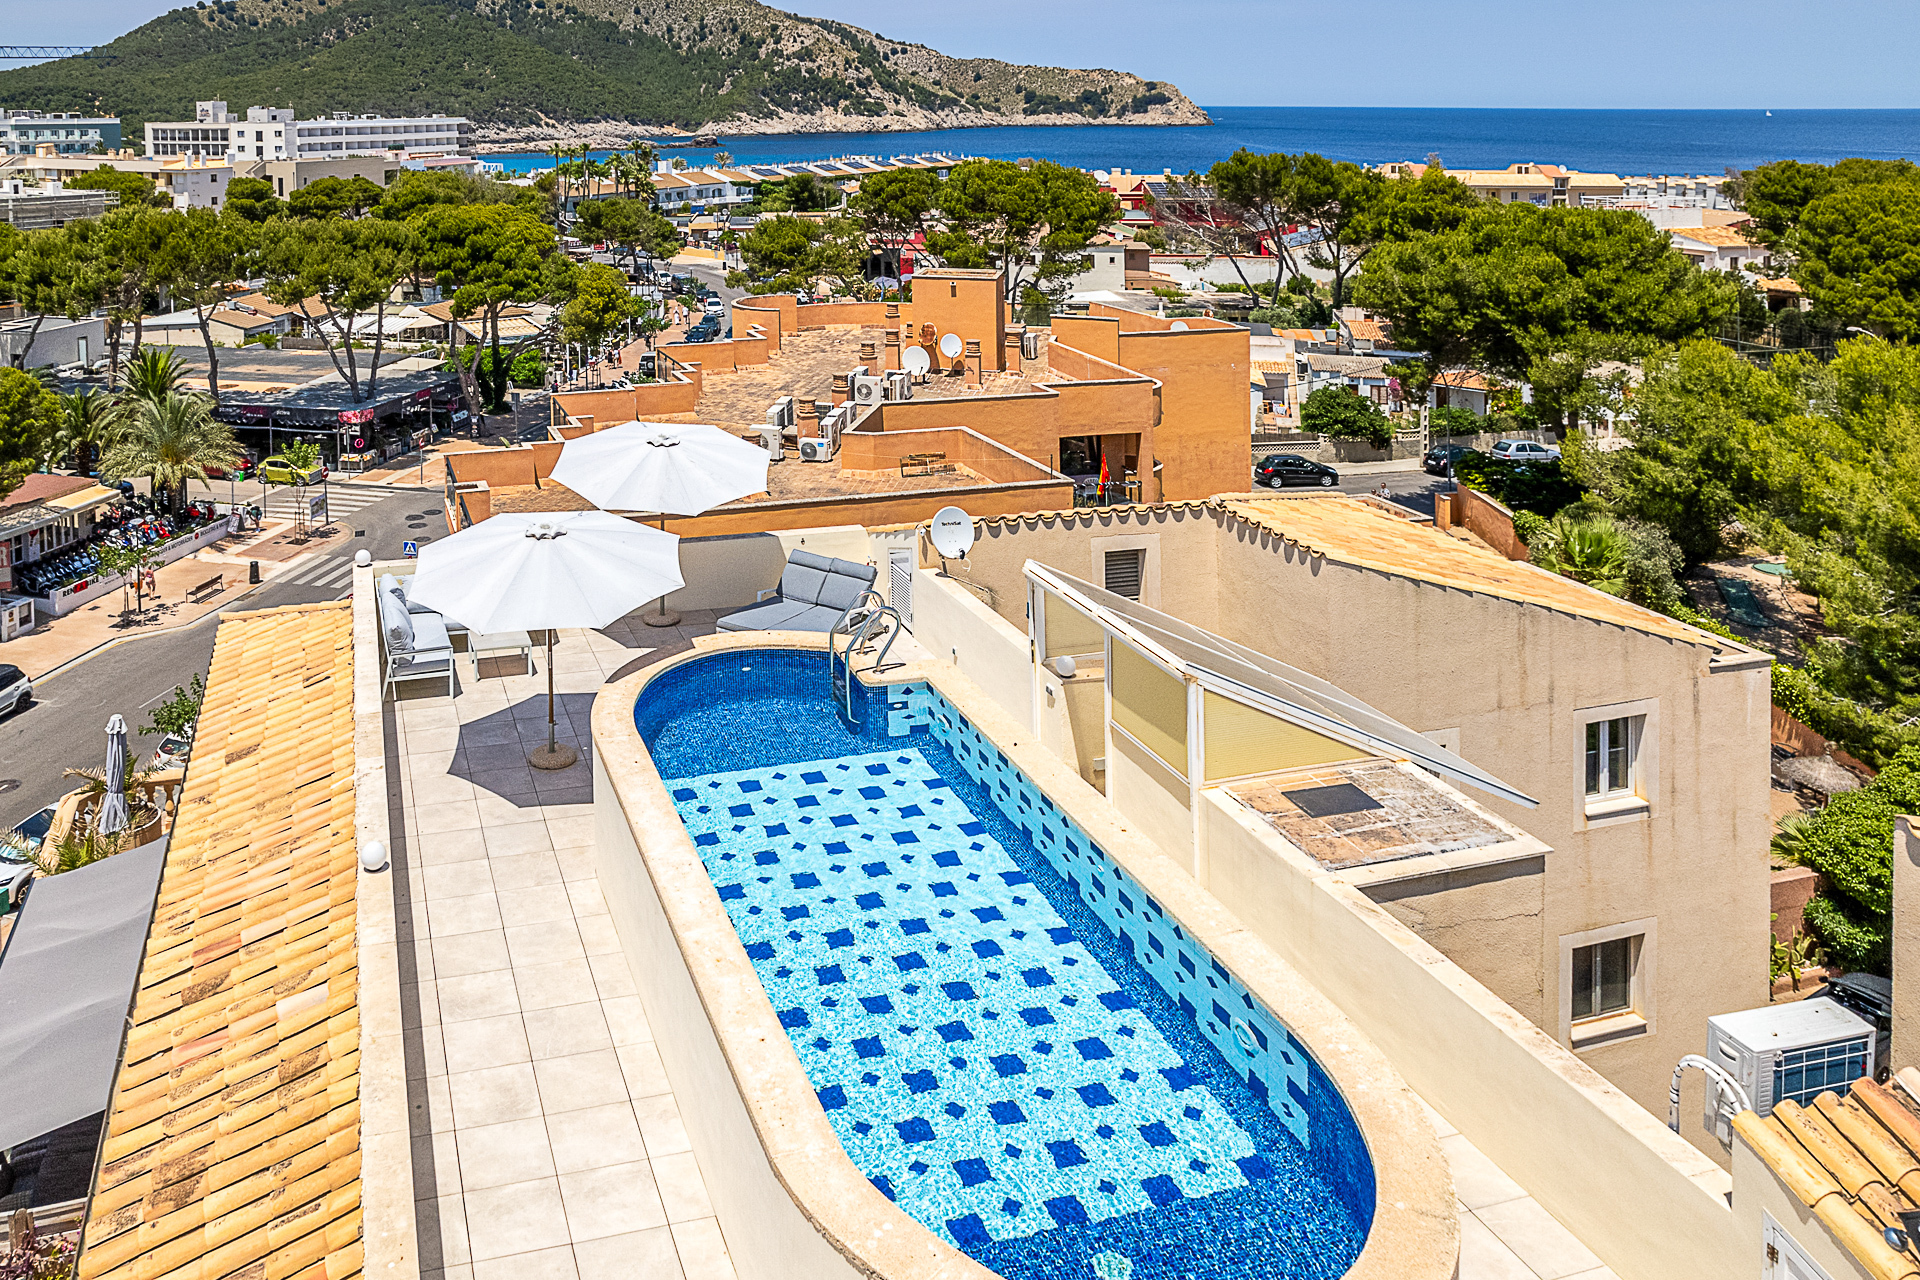 Fantastisches Penthouse mit 2 Schlafzimmern und Dachterrasse samt privatem Pool in Meernähe, 07590 Cala Ratjada (Spanien), Dachgeschosswohnung